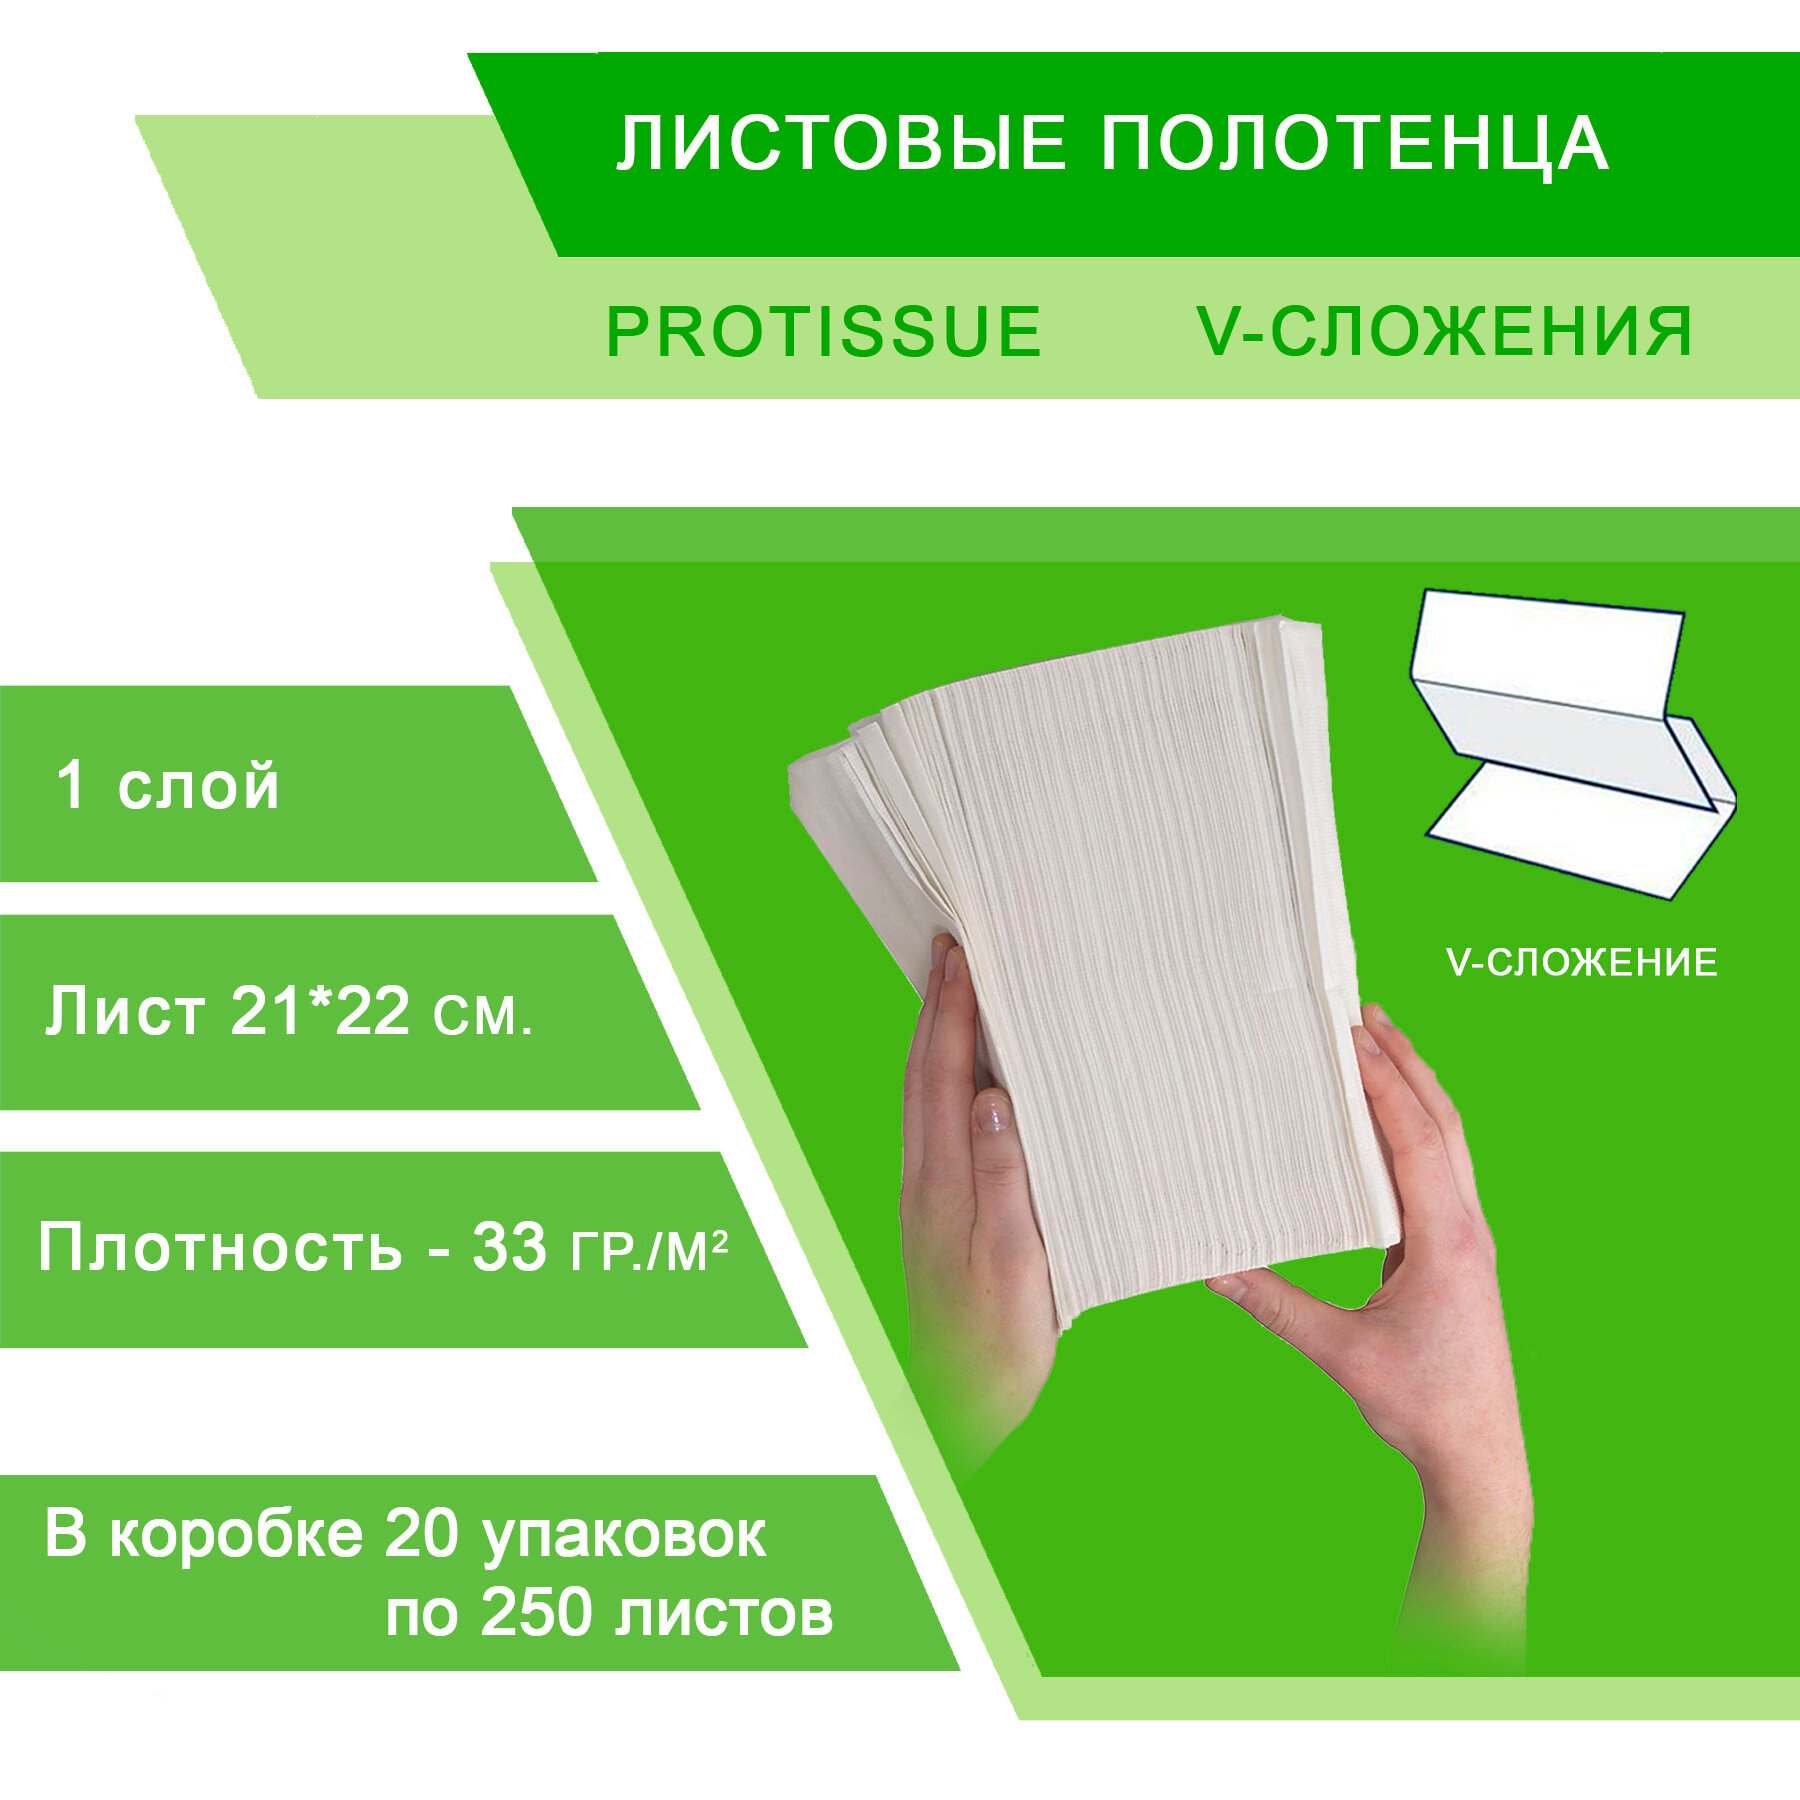 Полотенца бумажные Protissue Comfort C-193 V-сложения однослойные, 20 пачек по 250 листов